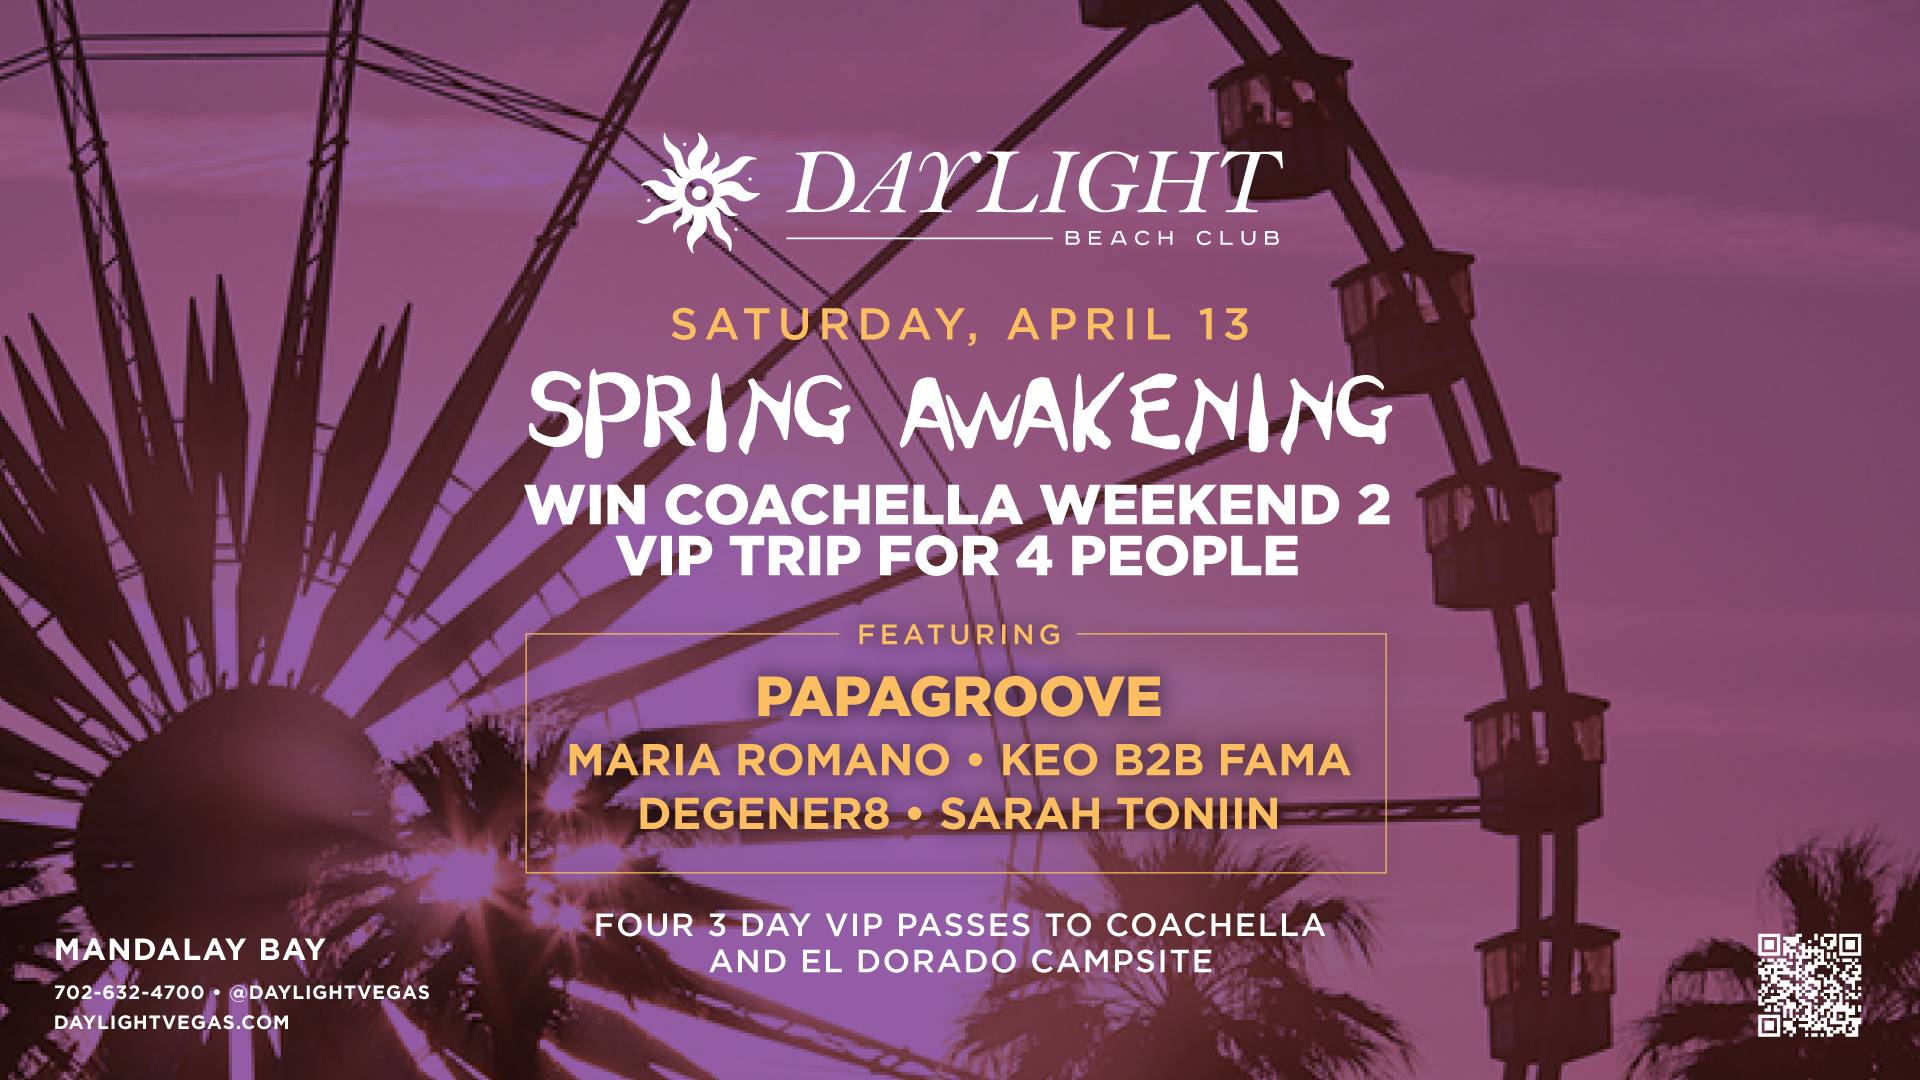 The Spring Awakening: Coachella Giveaway